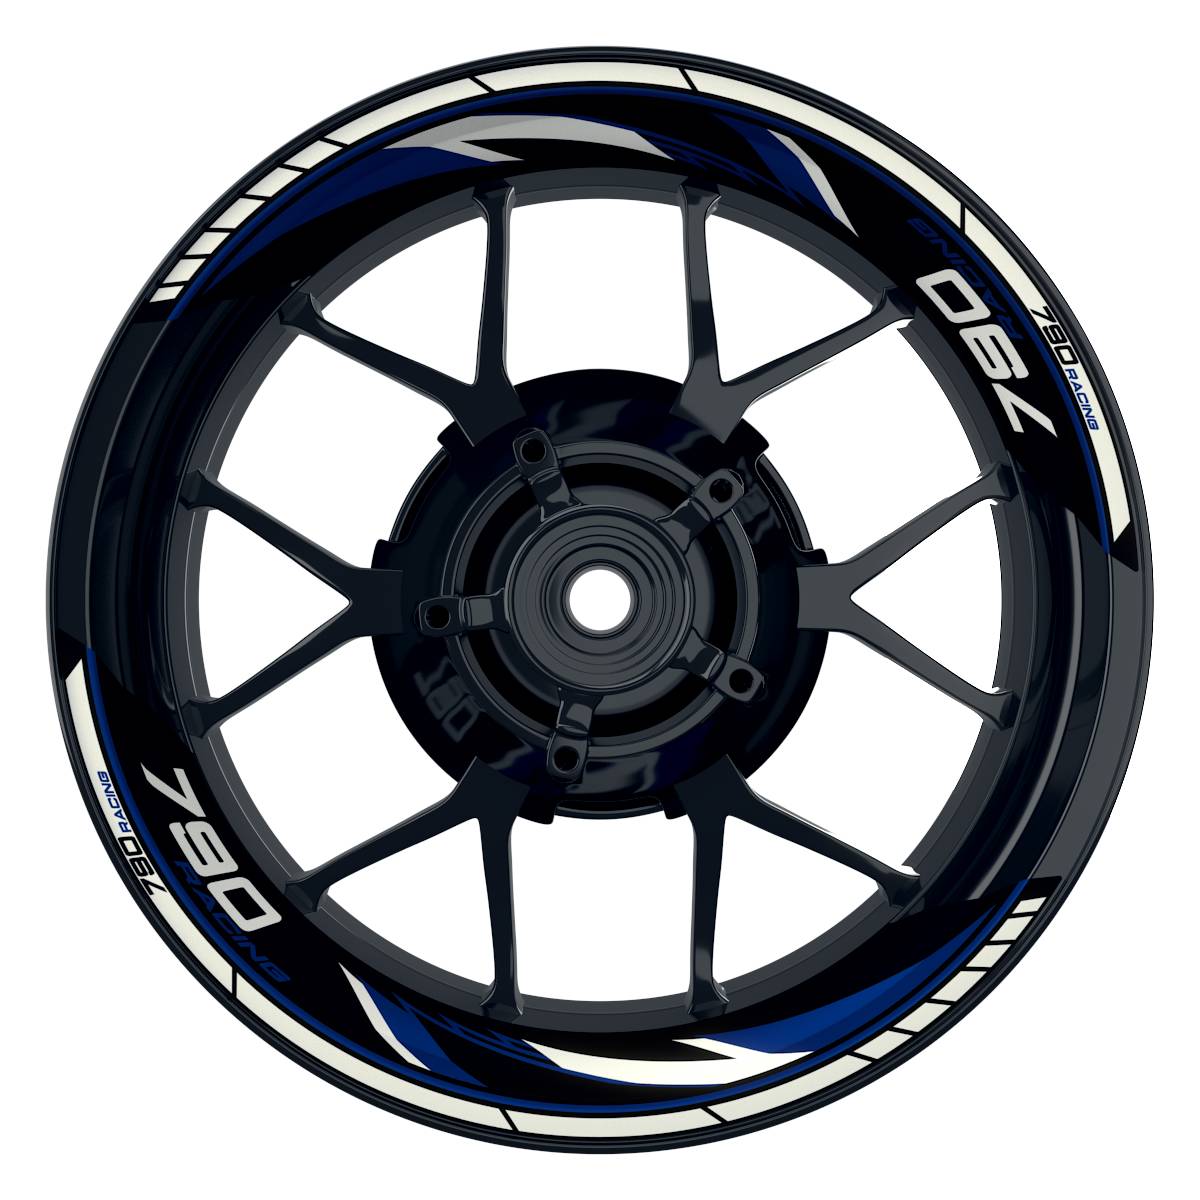 KTM Racing 790 Razor schwarz blau Frontansicht